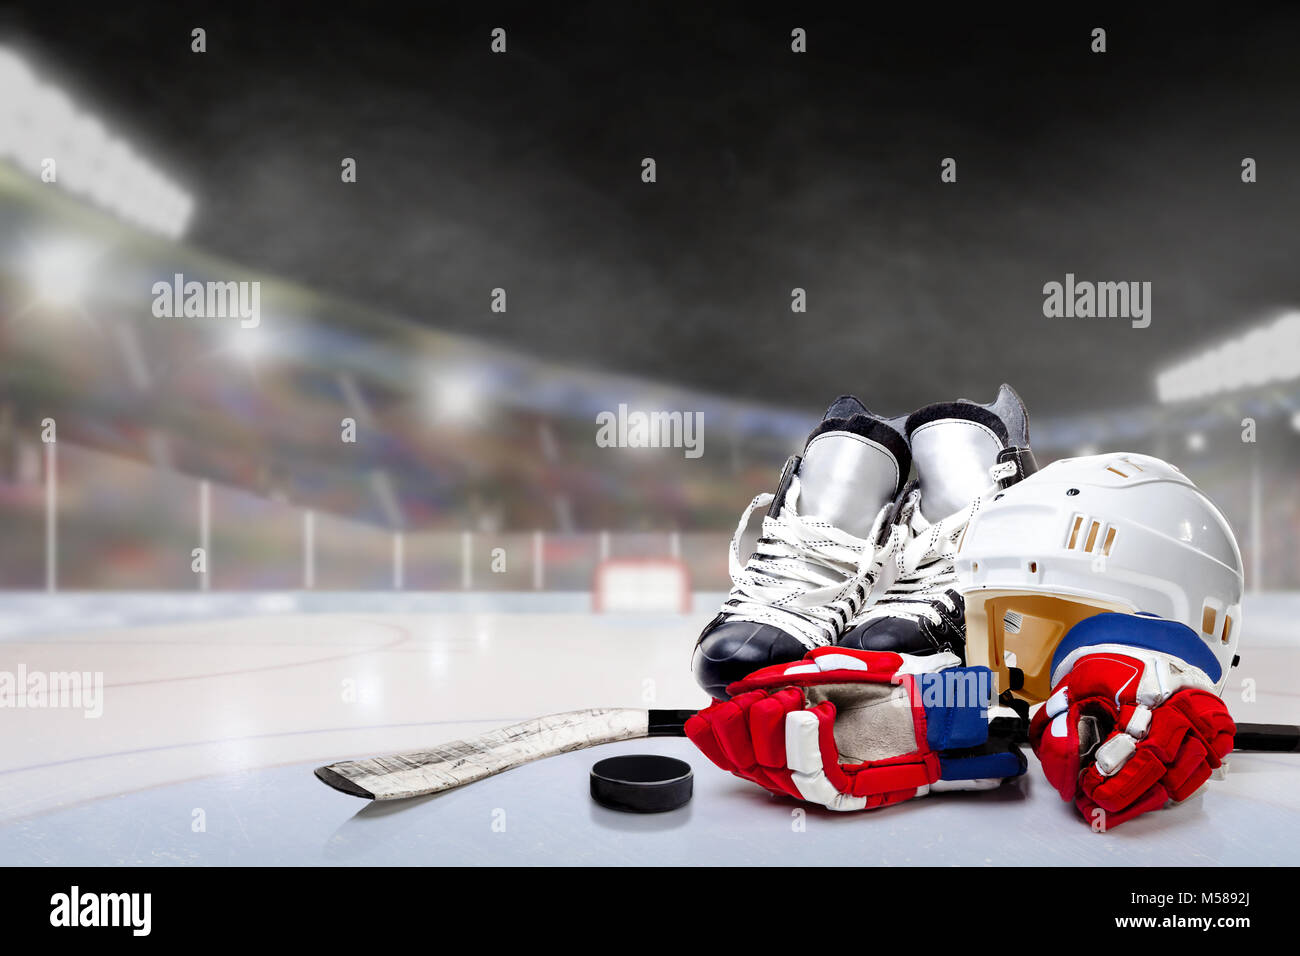 Eishockey Helm, Schlittschuhe, Handschuhe, Stock und Puck in Hell im Stadion mit Fokus auf Vorder- und flache Tiefenschärfe auf Hintergrund beleuchtet. D Stockfoto